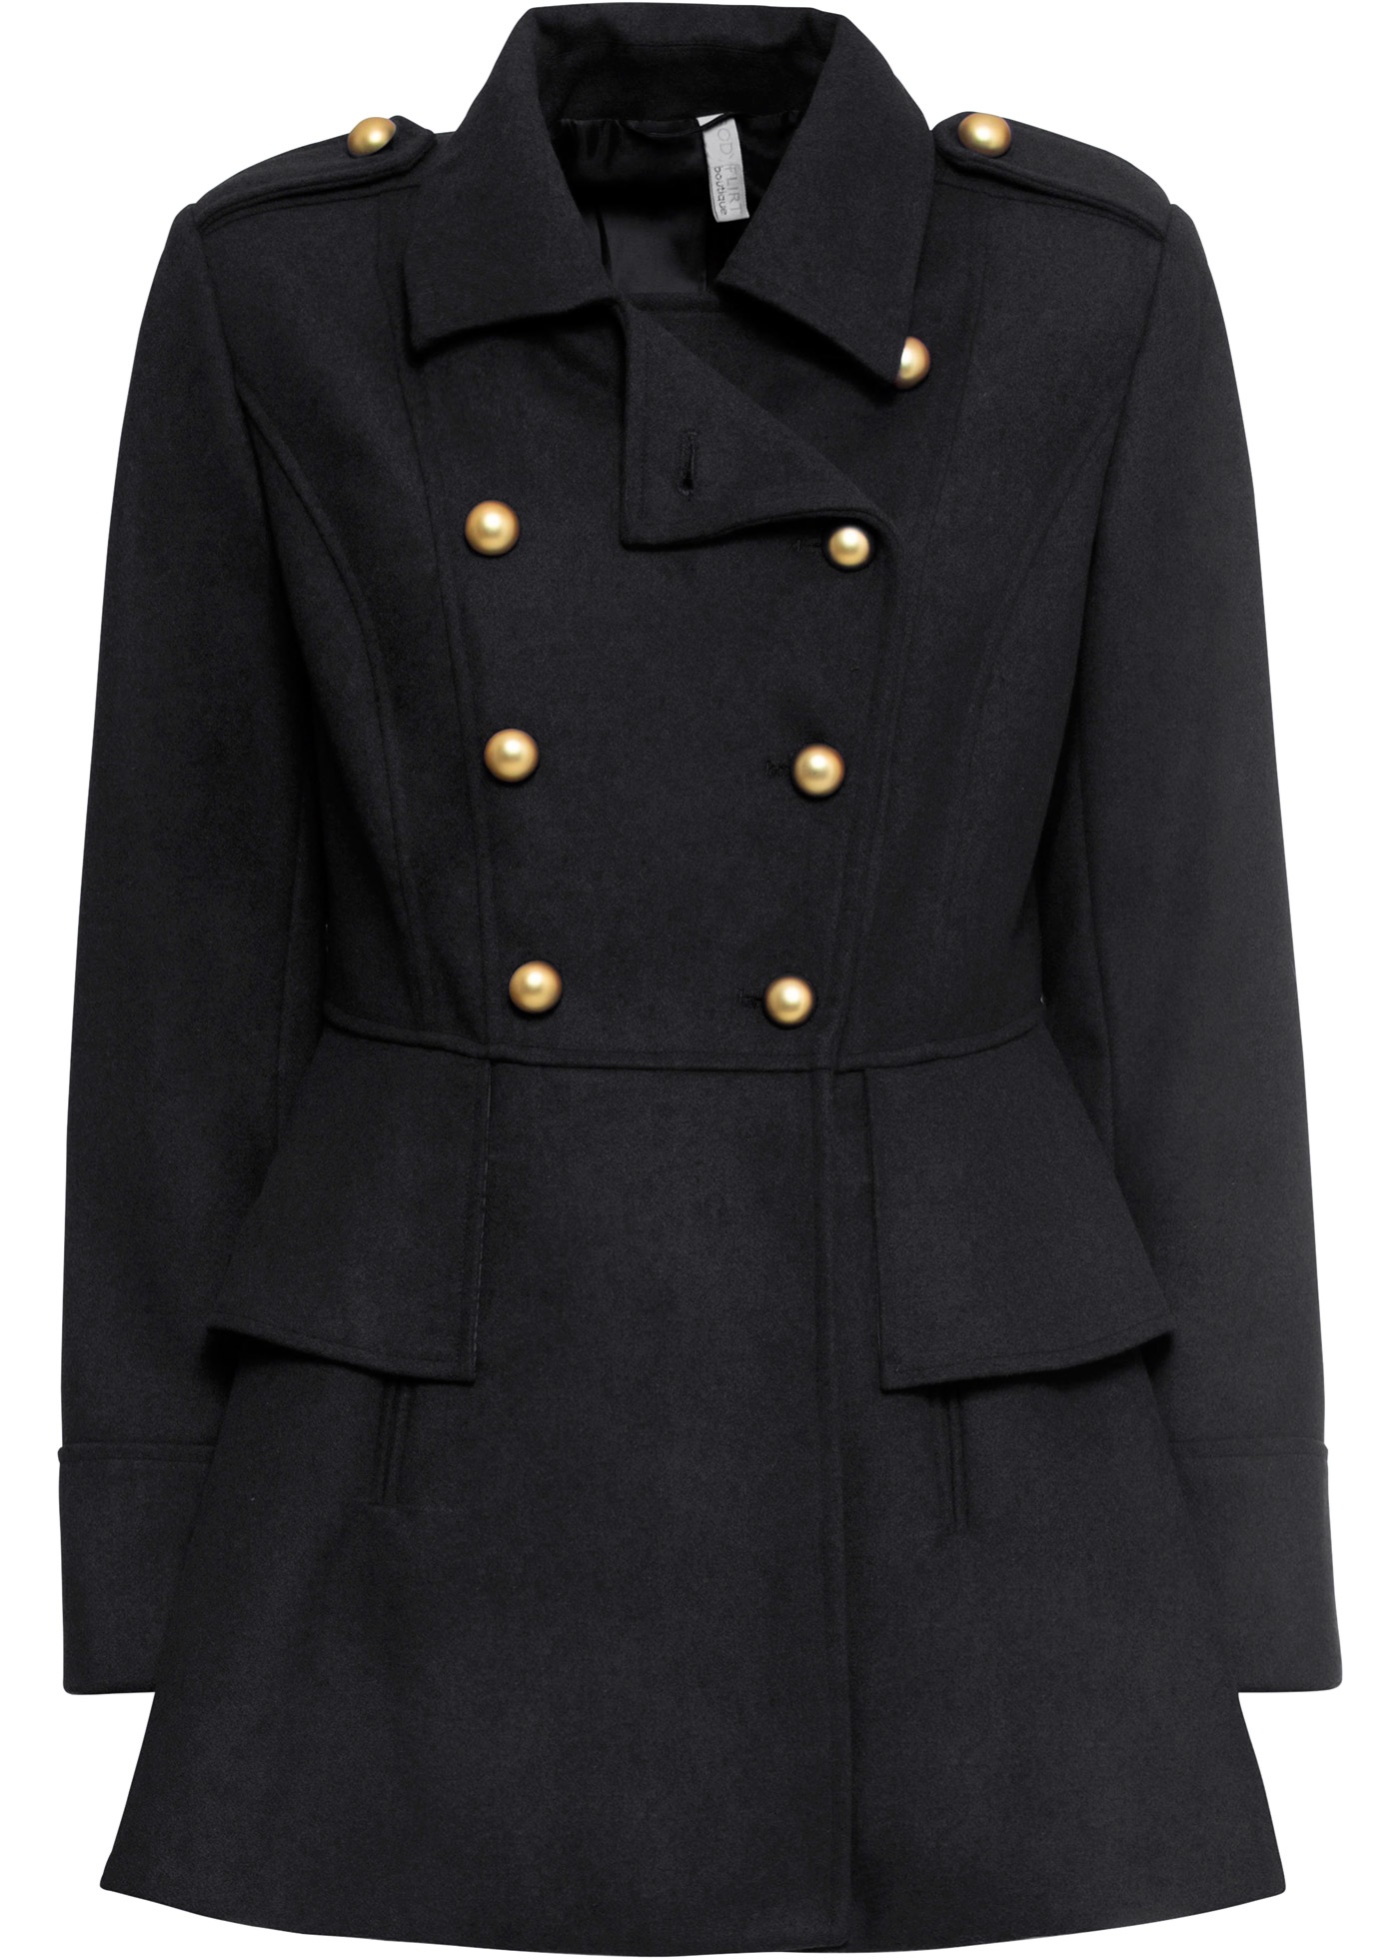 manteau court militaire à teneur en laine, taille courte